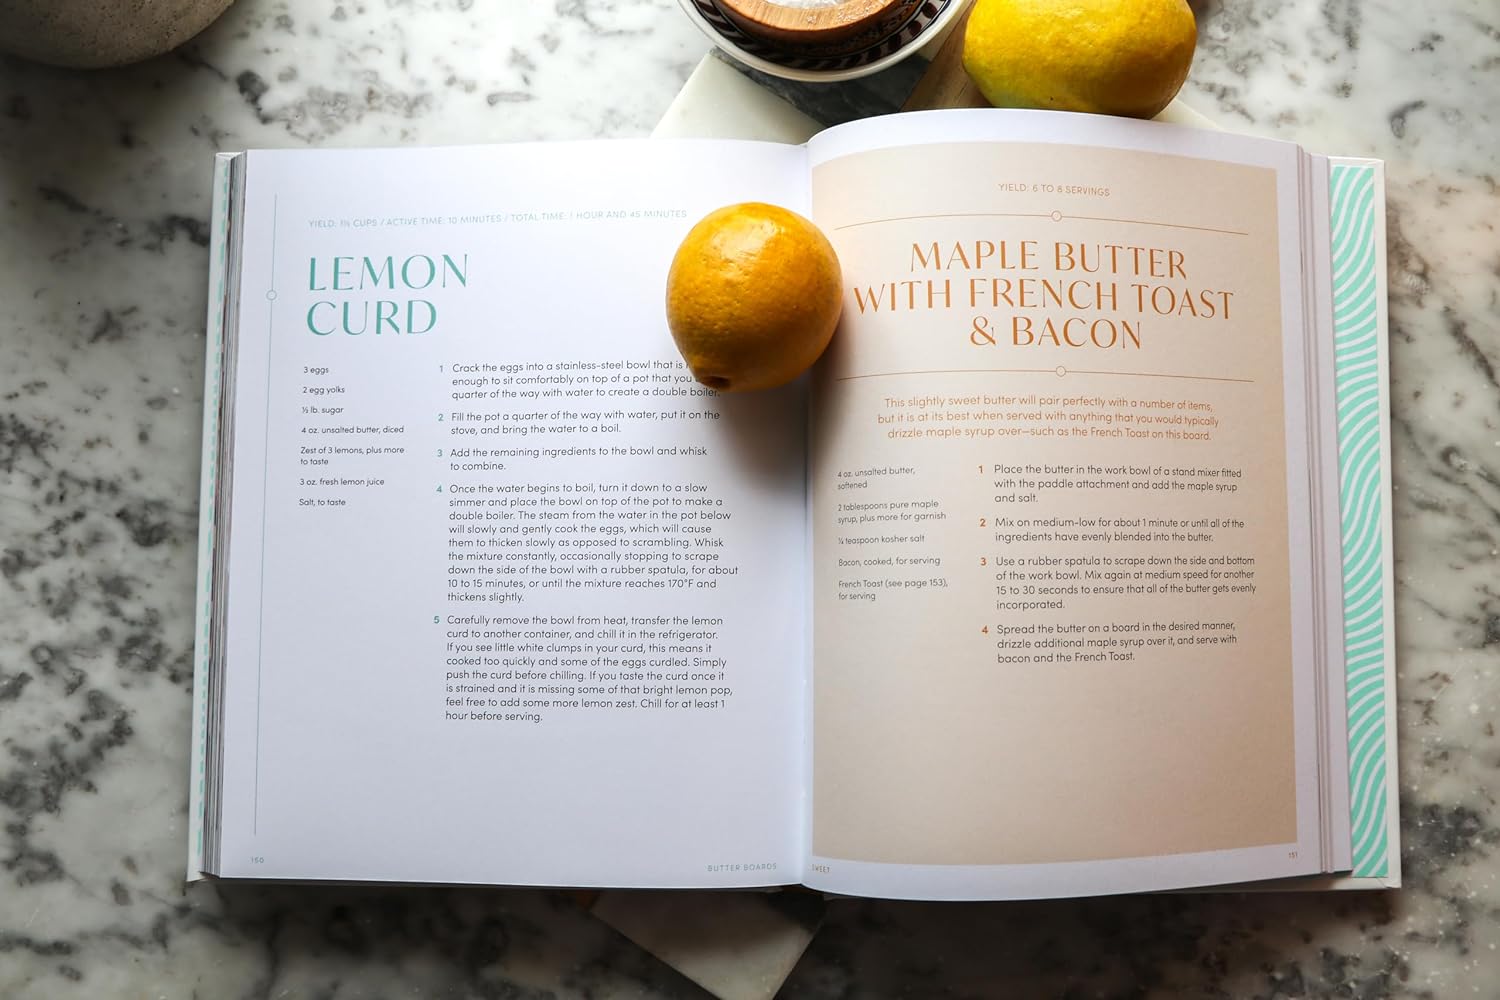 Butter Boards Recipe Book